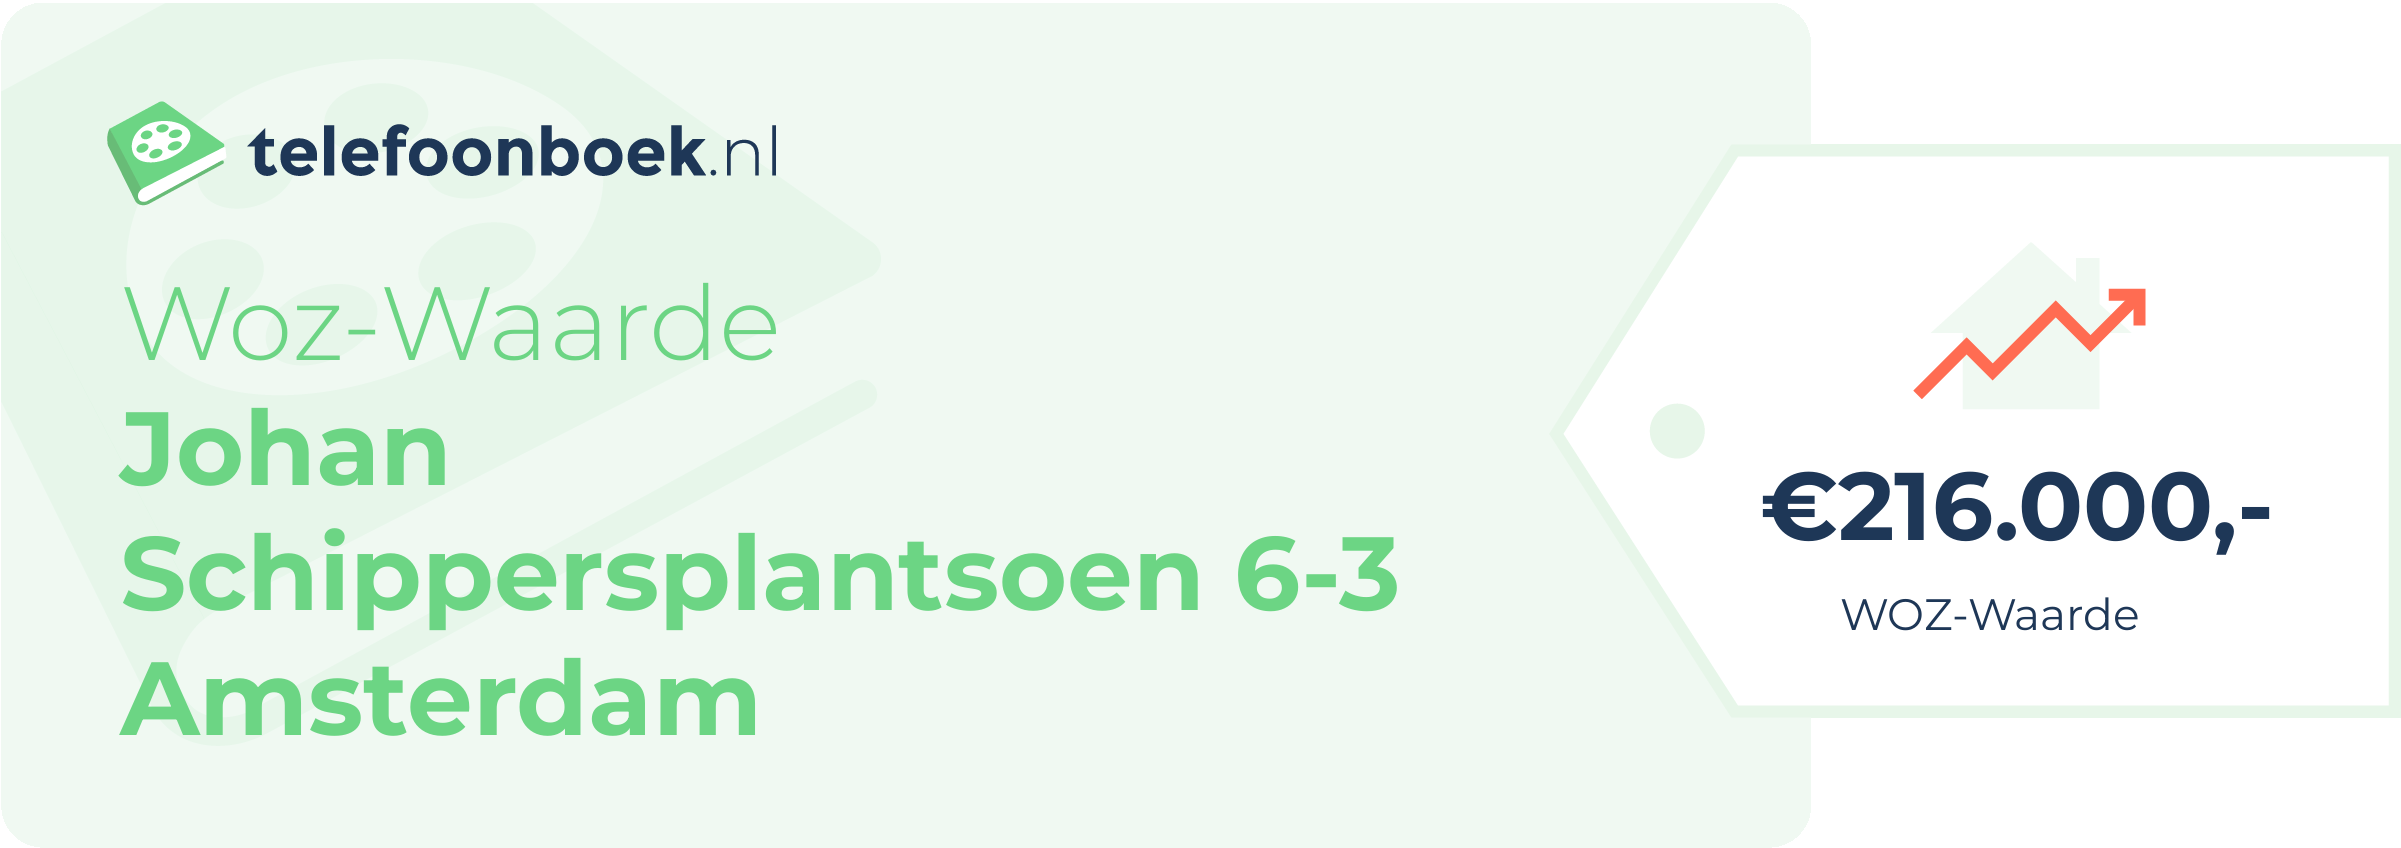 WOZ-waarde Johan Schippersplantsoen 6-3 Amsterdam